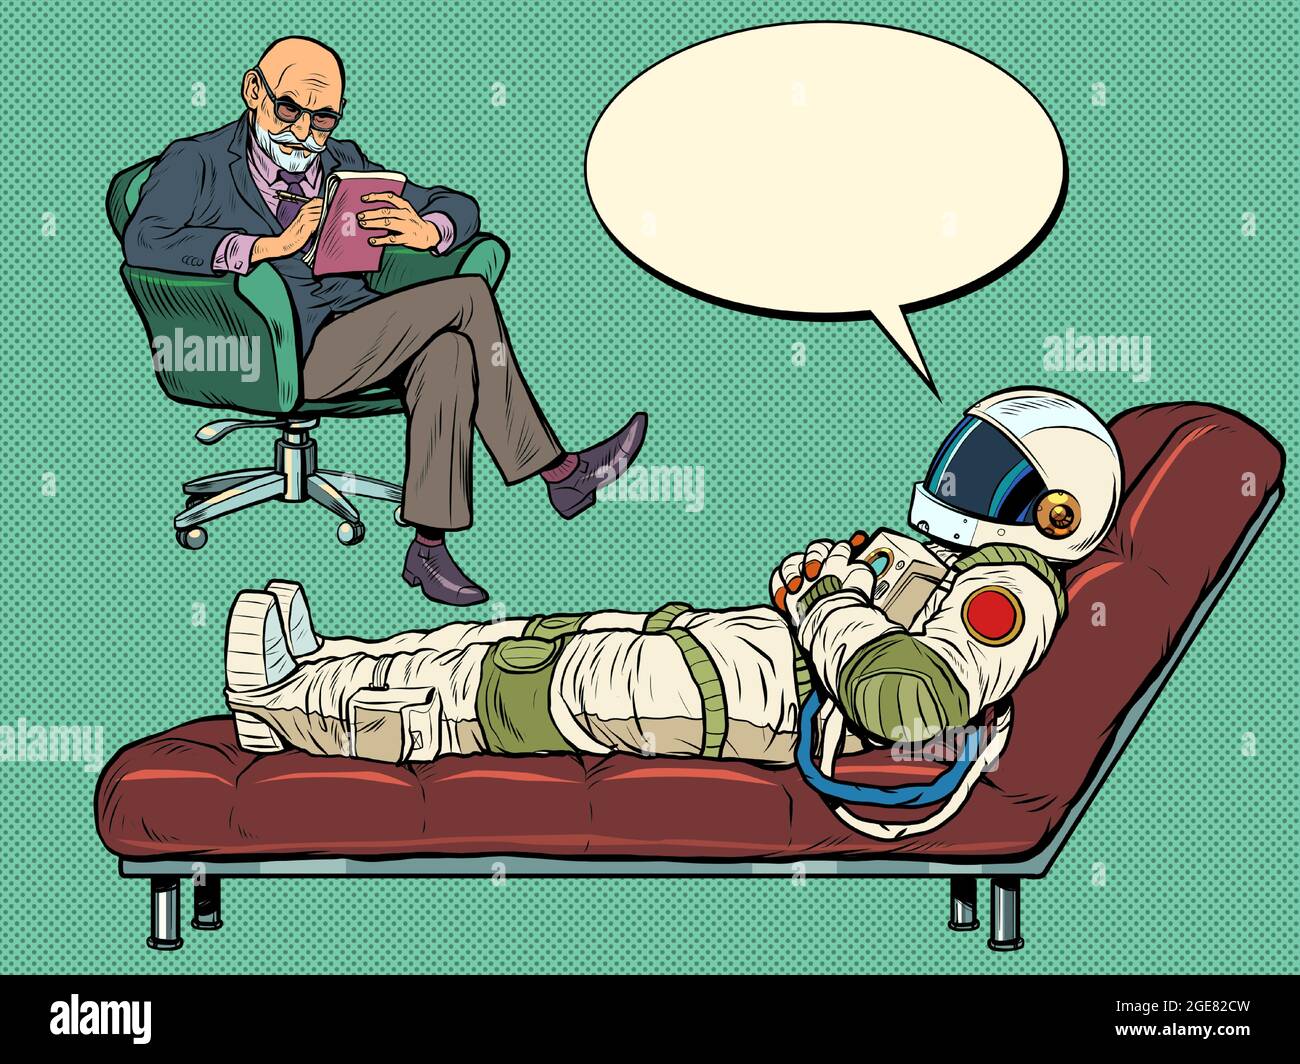 Une séance de psychothérapie. Le psychothérapeute voit un astronaute, le patient est allongé sur le canapé Illustration de Vecteur